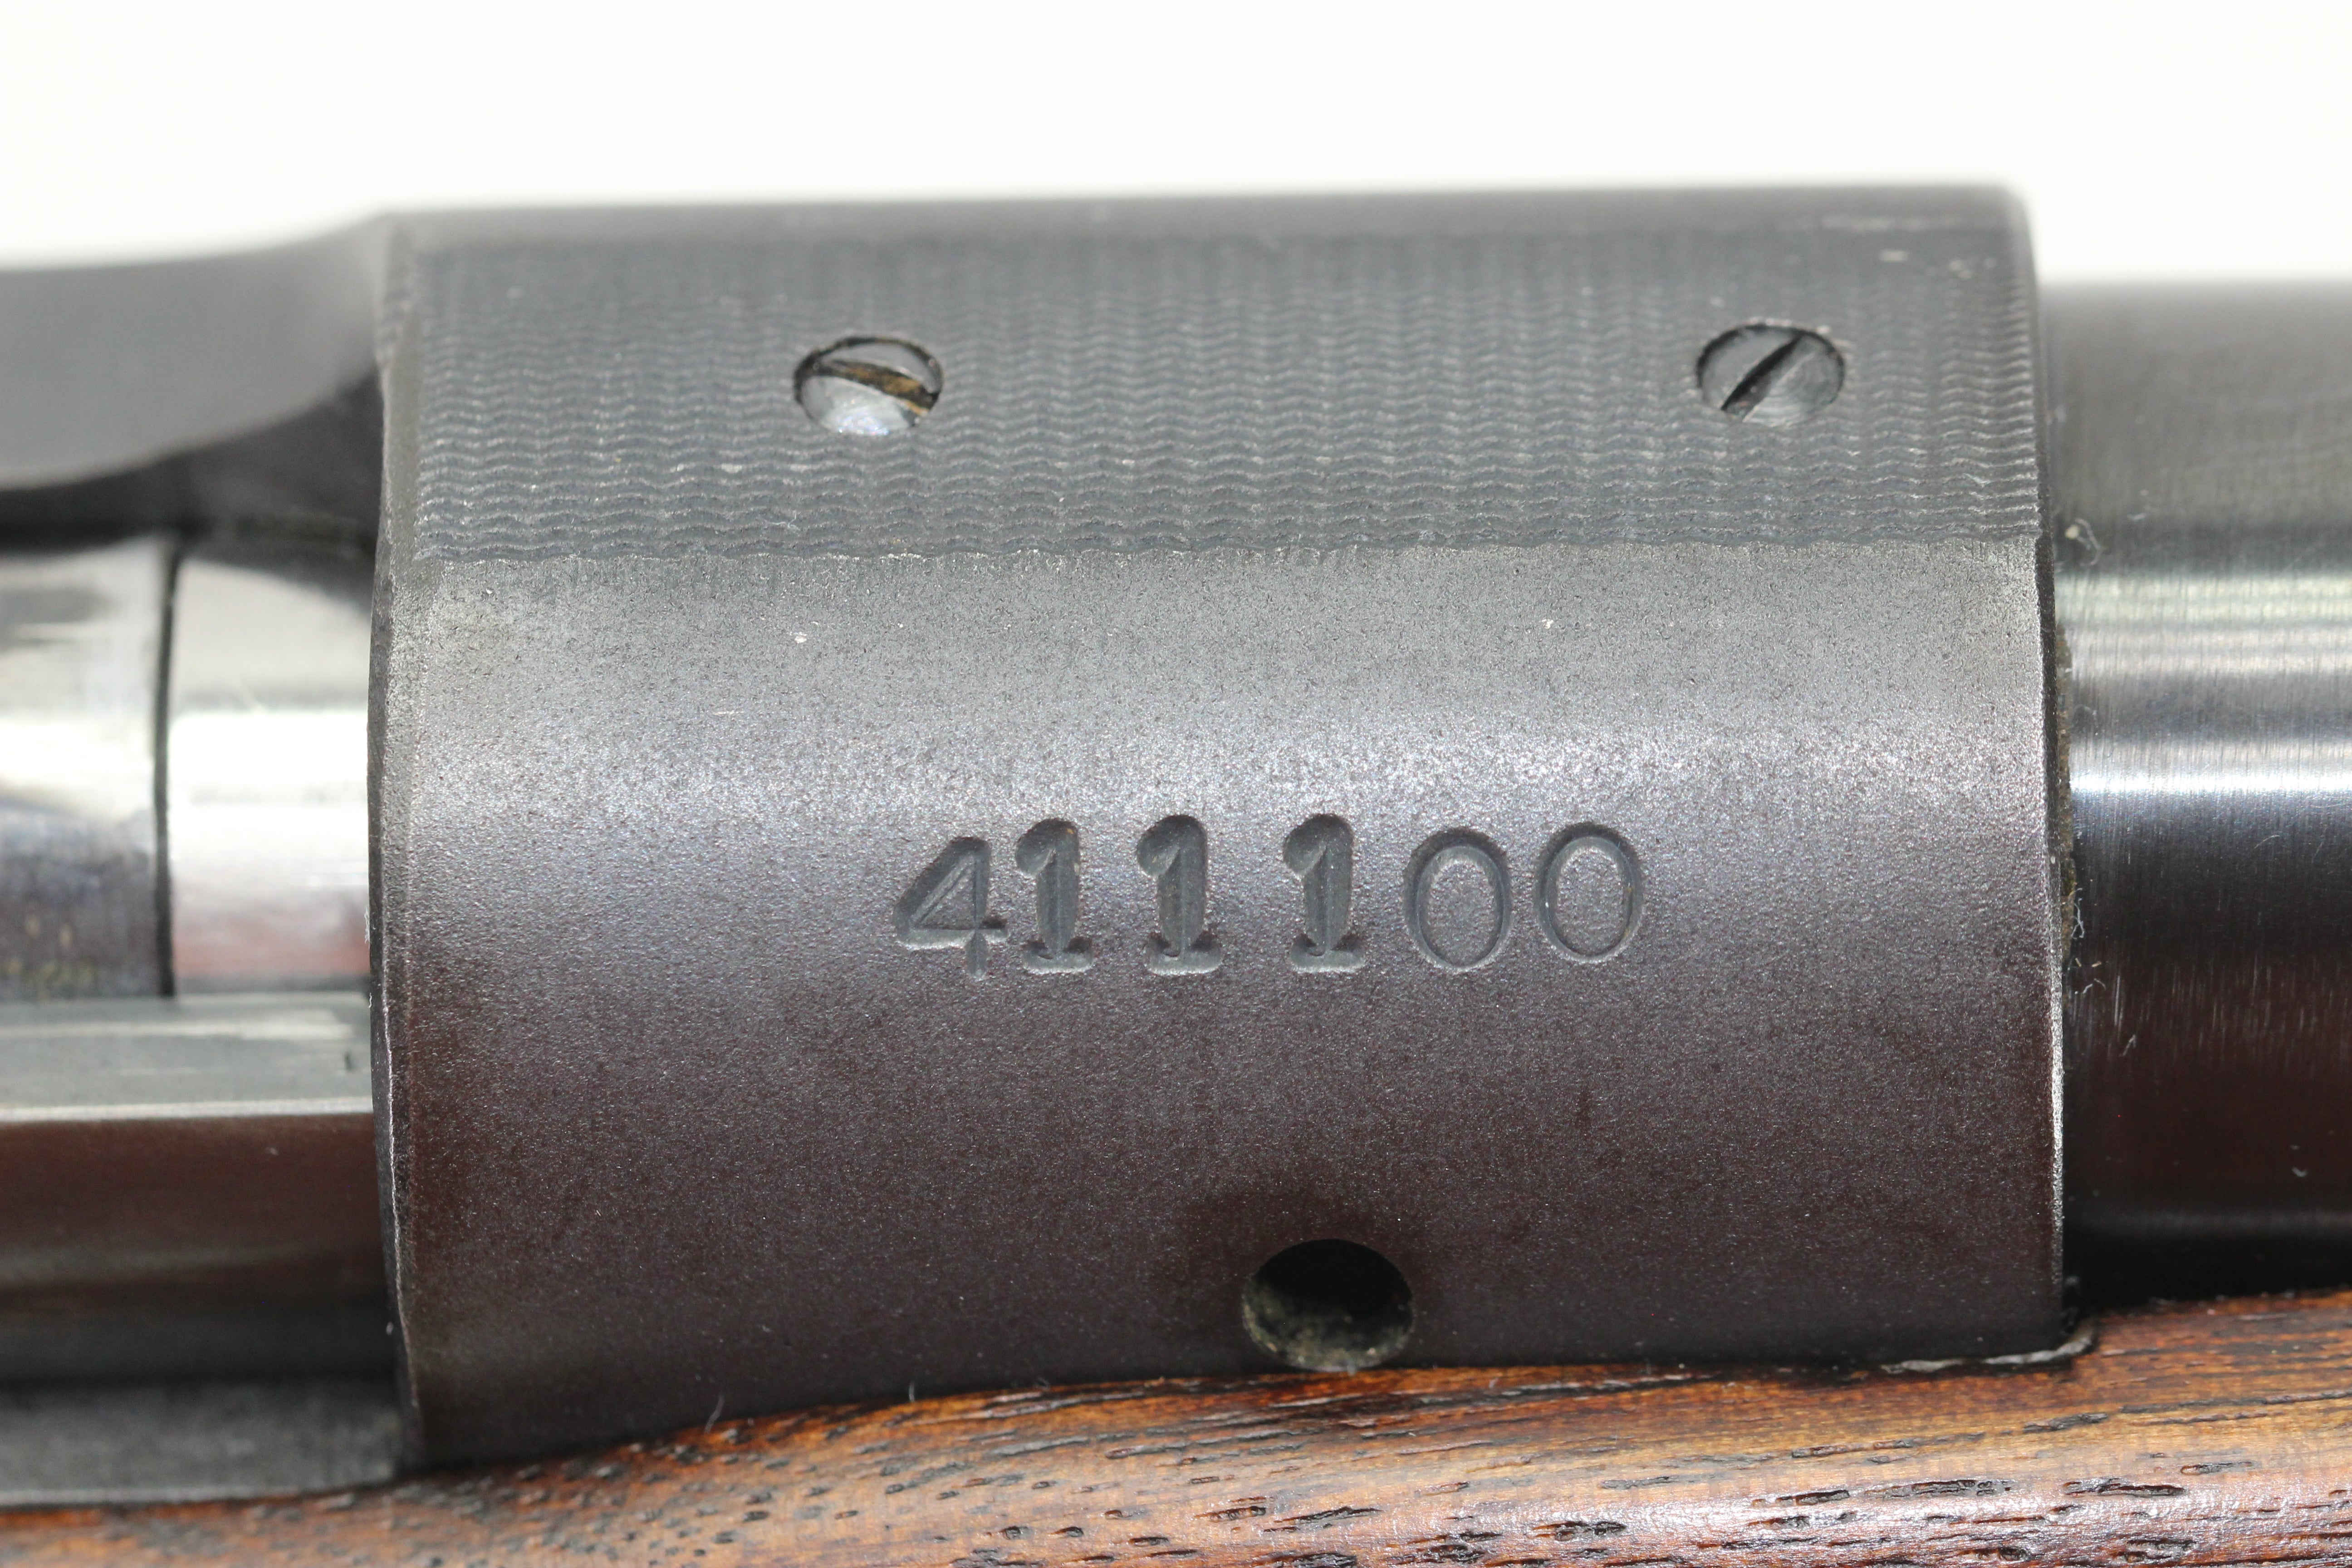 .30-06 Target Rifle - 1957